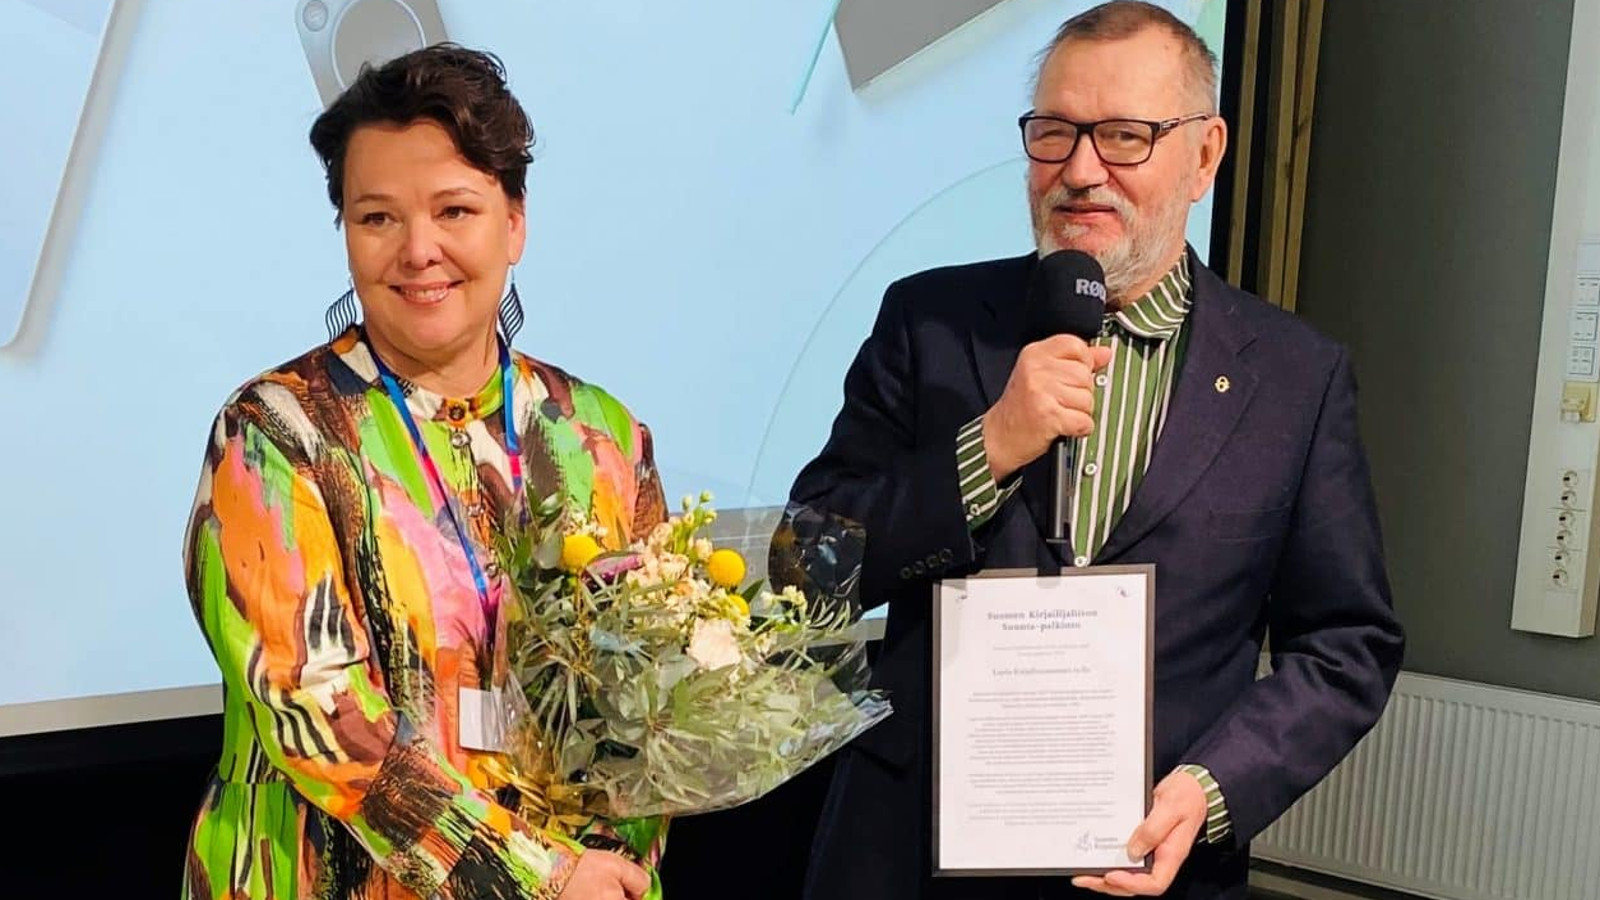 Kuvassa ovat Minna Kurttila värikkäässä mekossa ja kukat kädessään ja Erkki Kaila kunniakirja kädessään.  